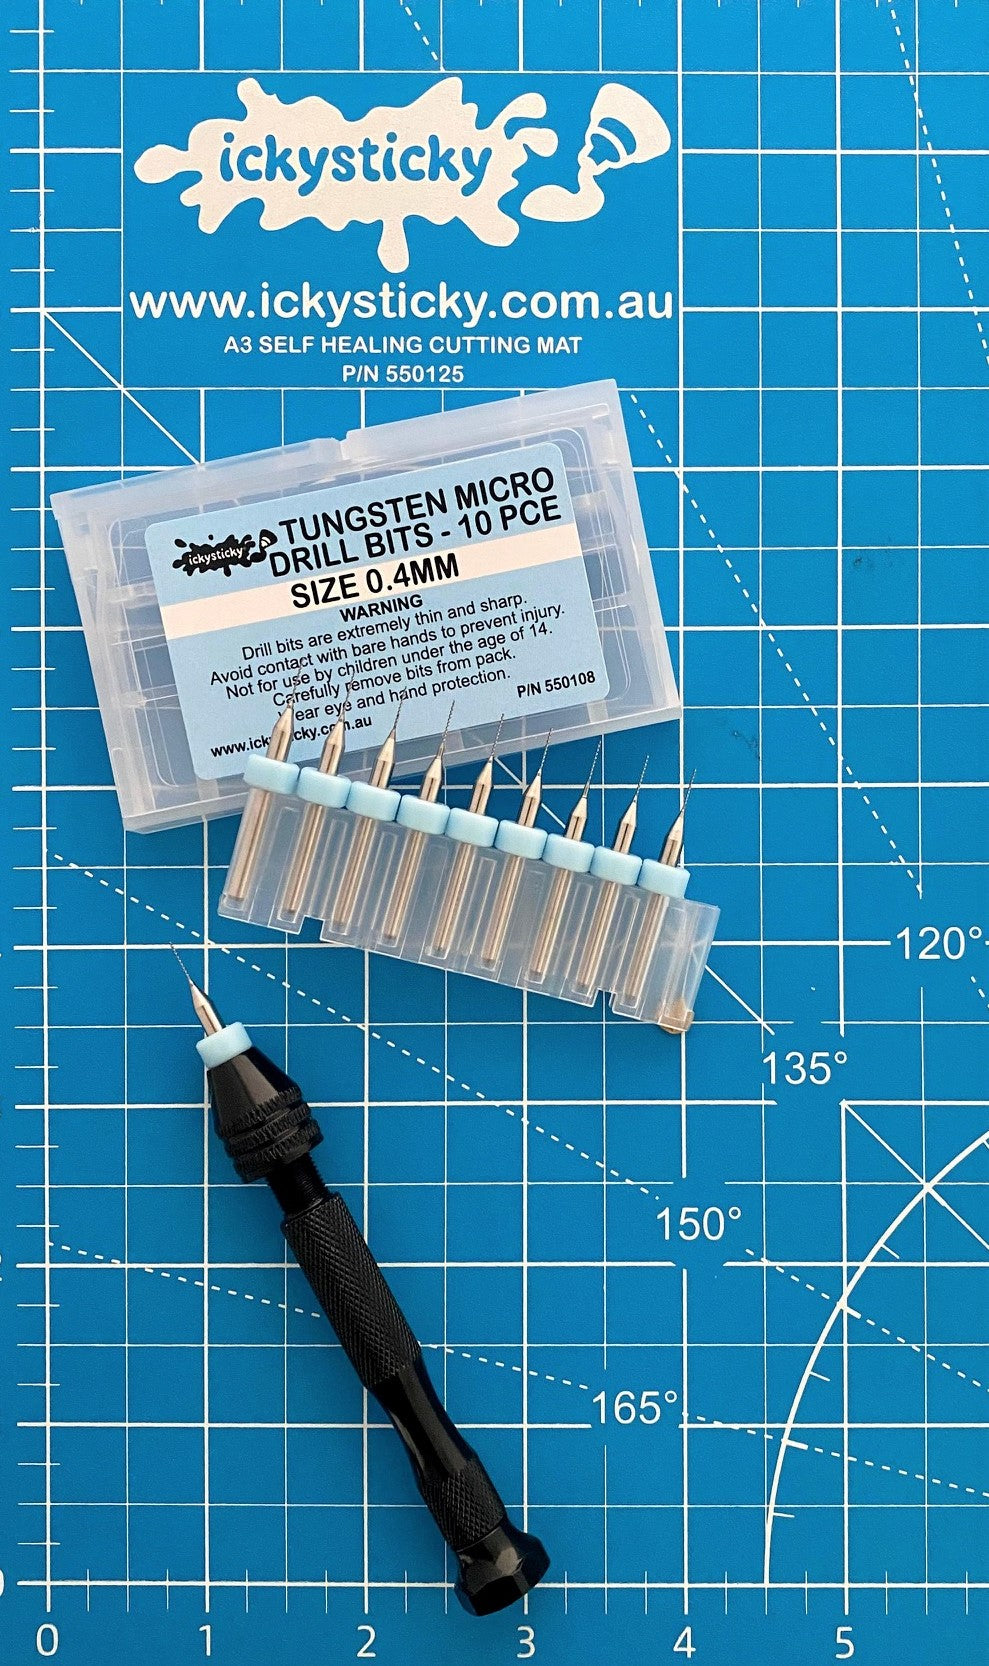 10 Pce Tungsten Micro Drill Bits 0.4mm